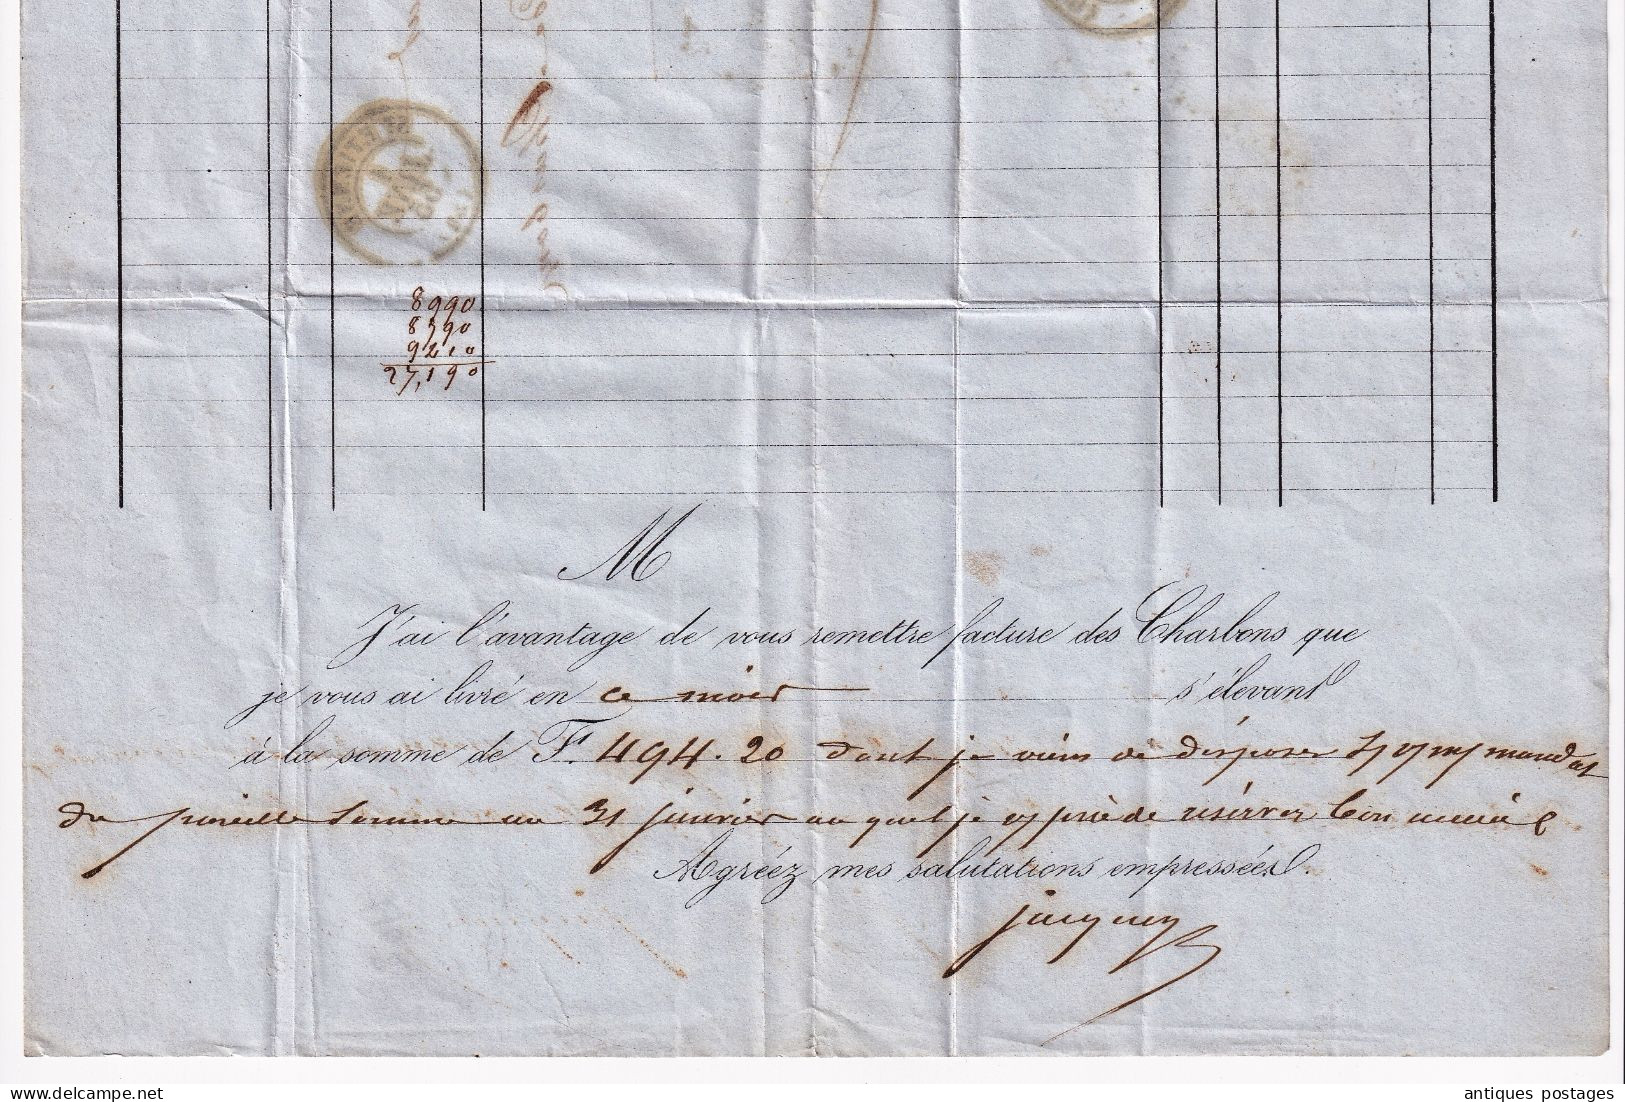 Lettre 1855 Saint Étienne Bérard Raynaud Marchand de Charbon Lyon Timbre Napoléon III non dentelé avec voisin